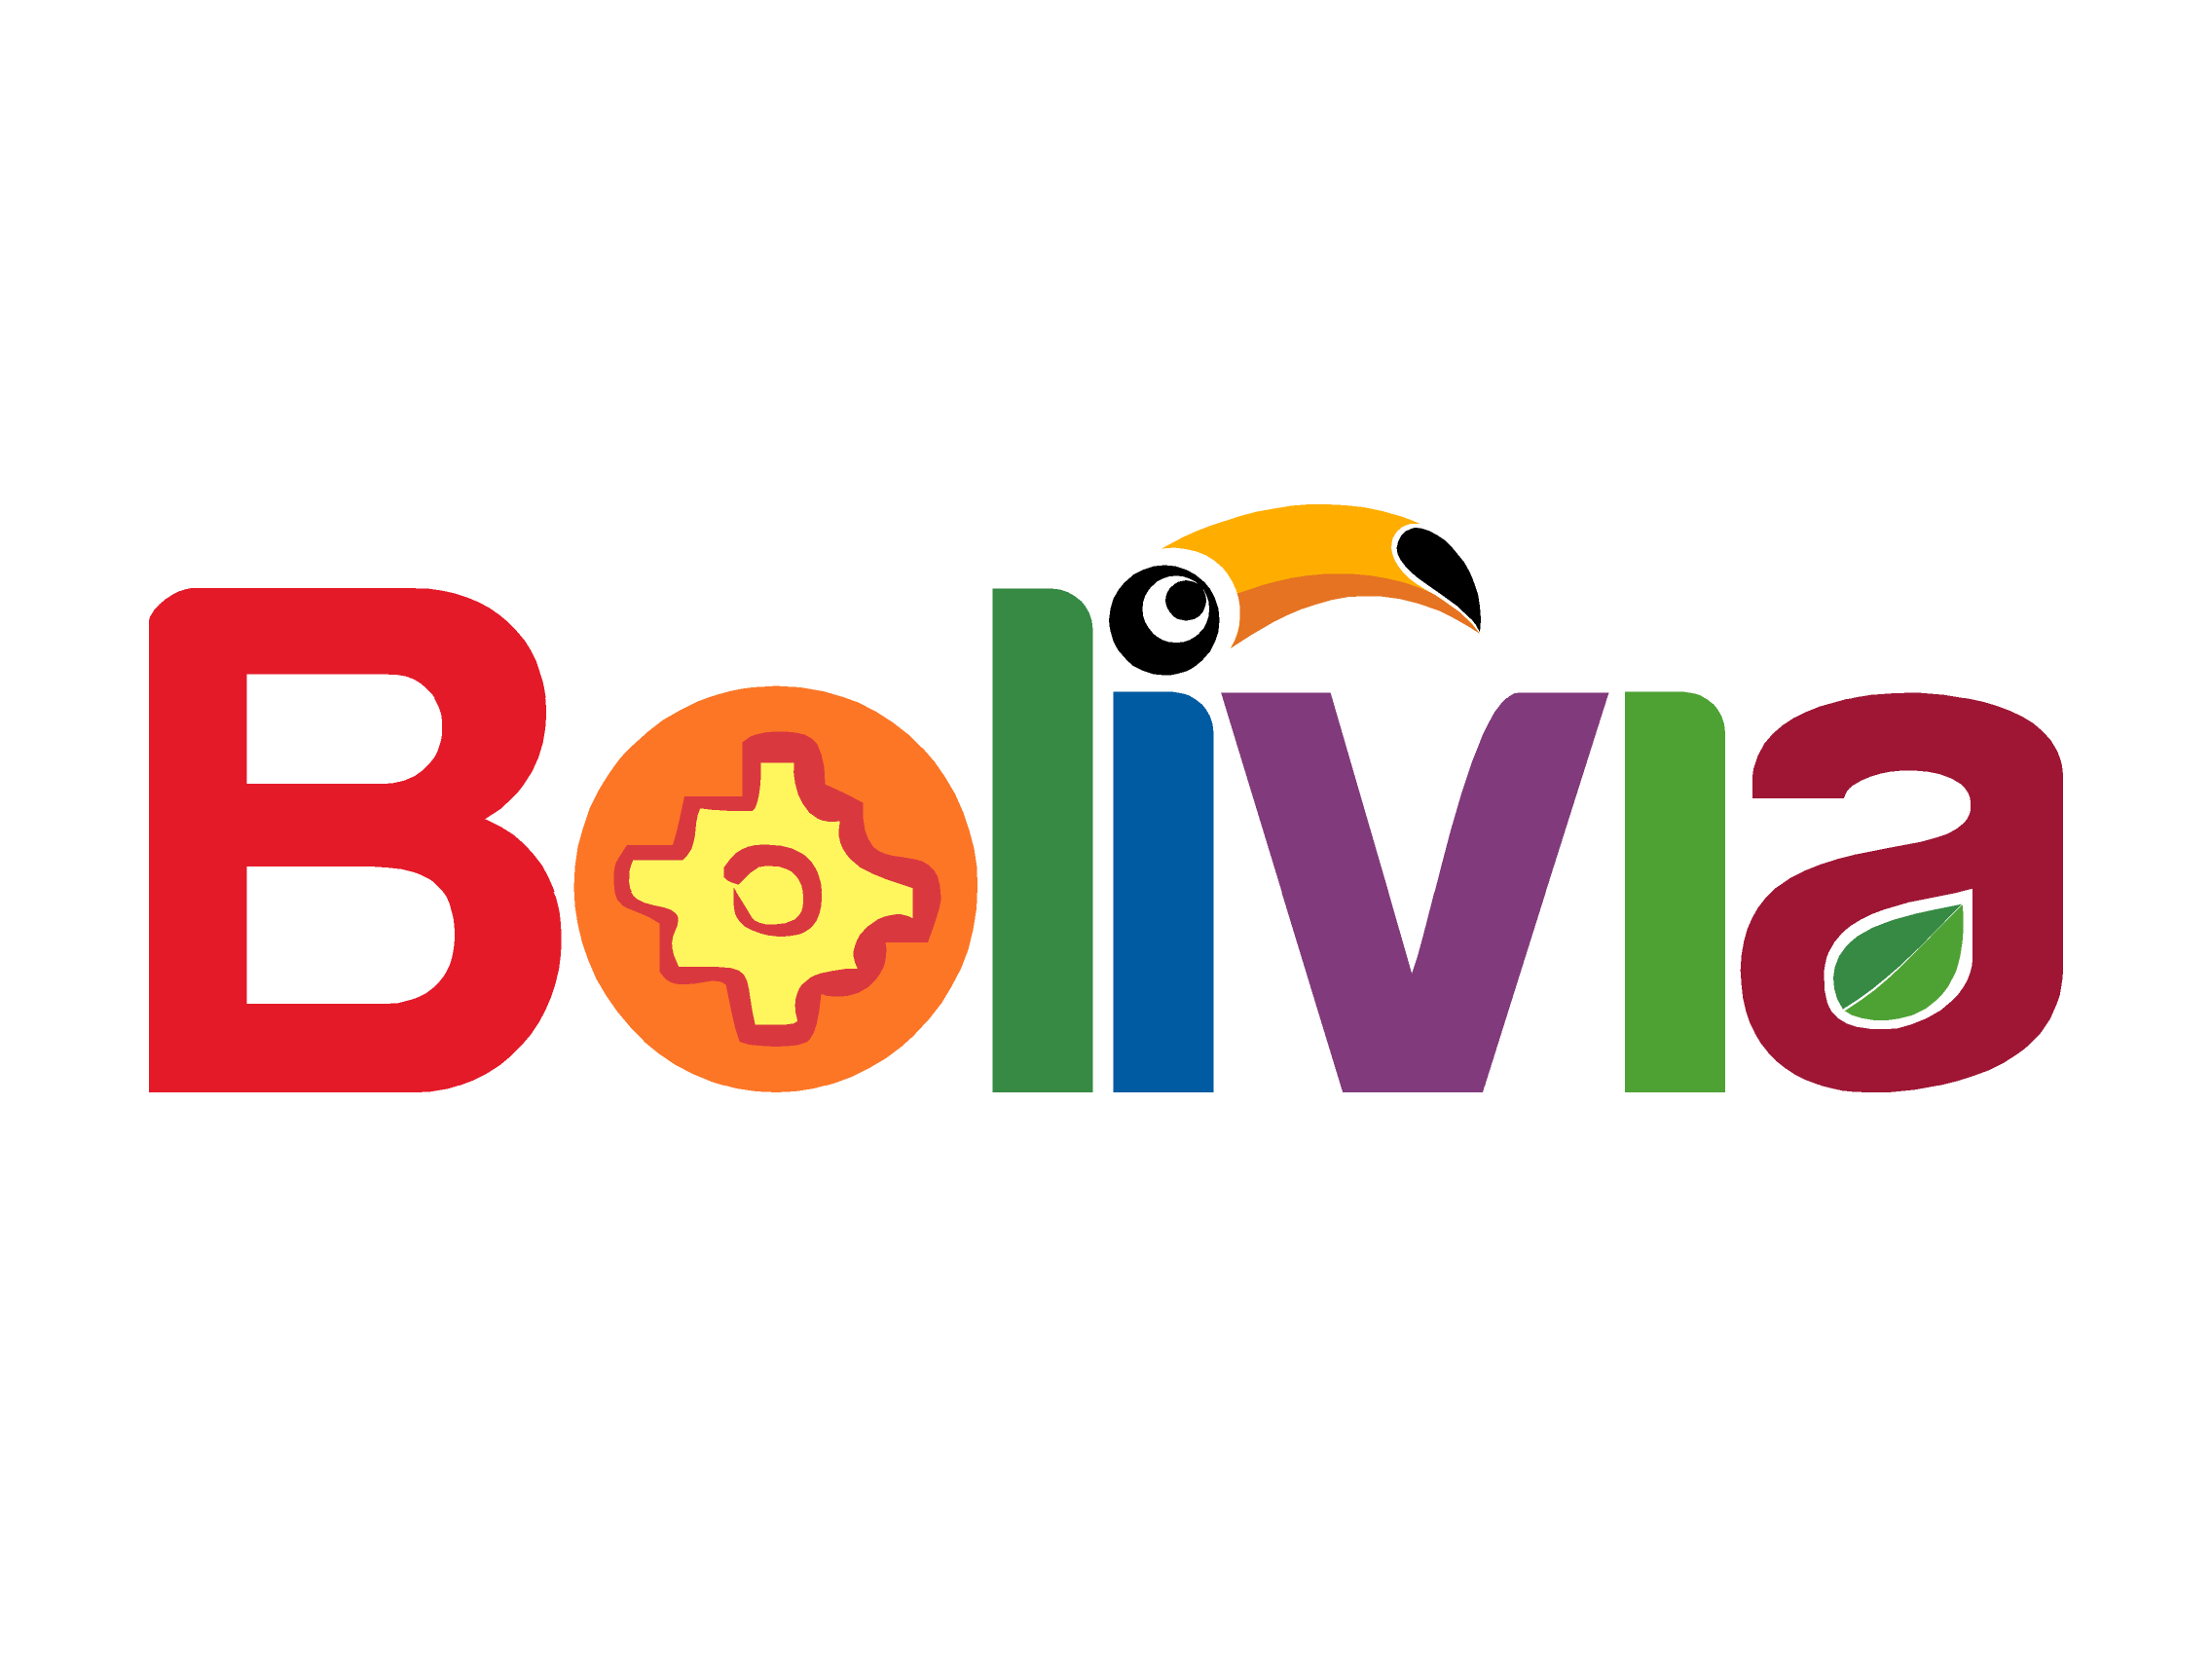 Bolivia Logo - Bolivia logo old